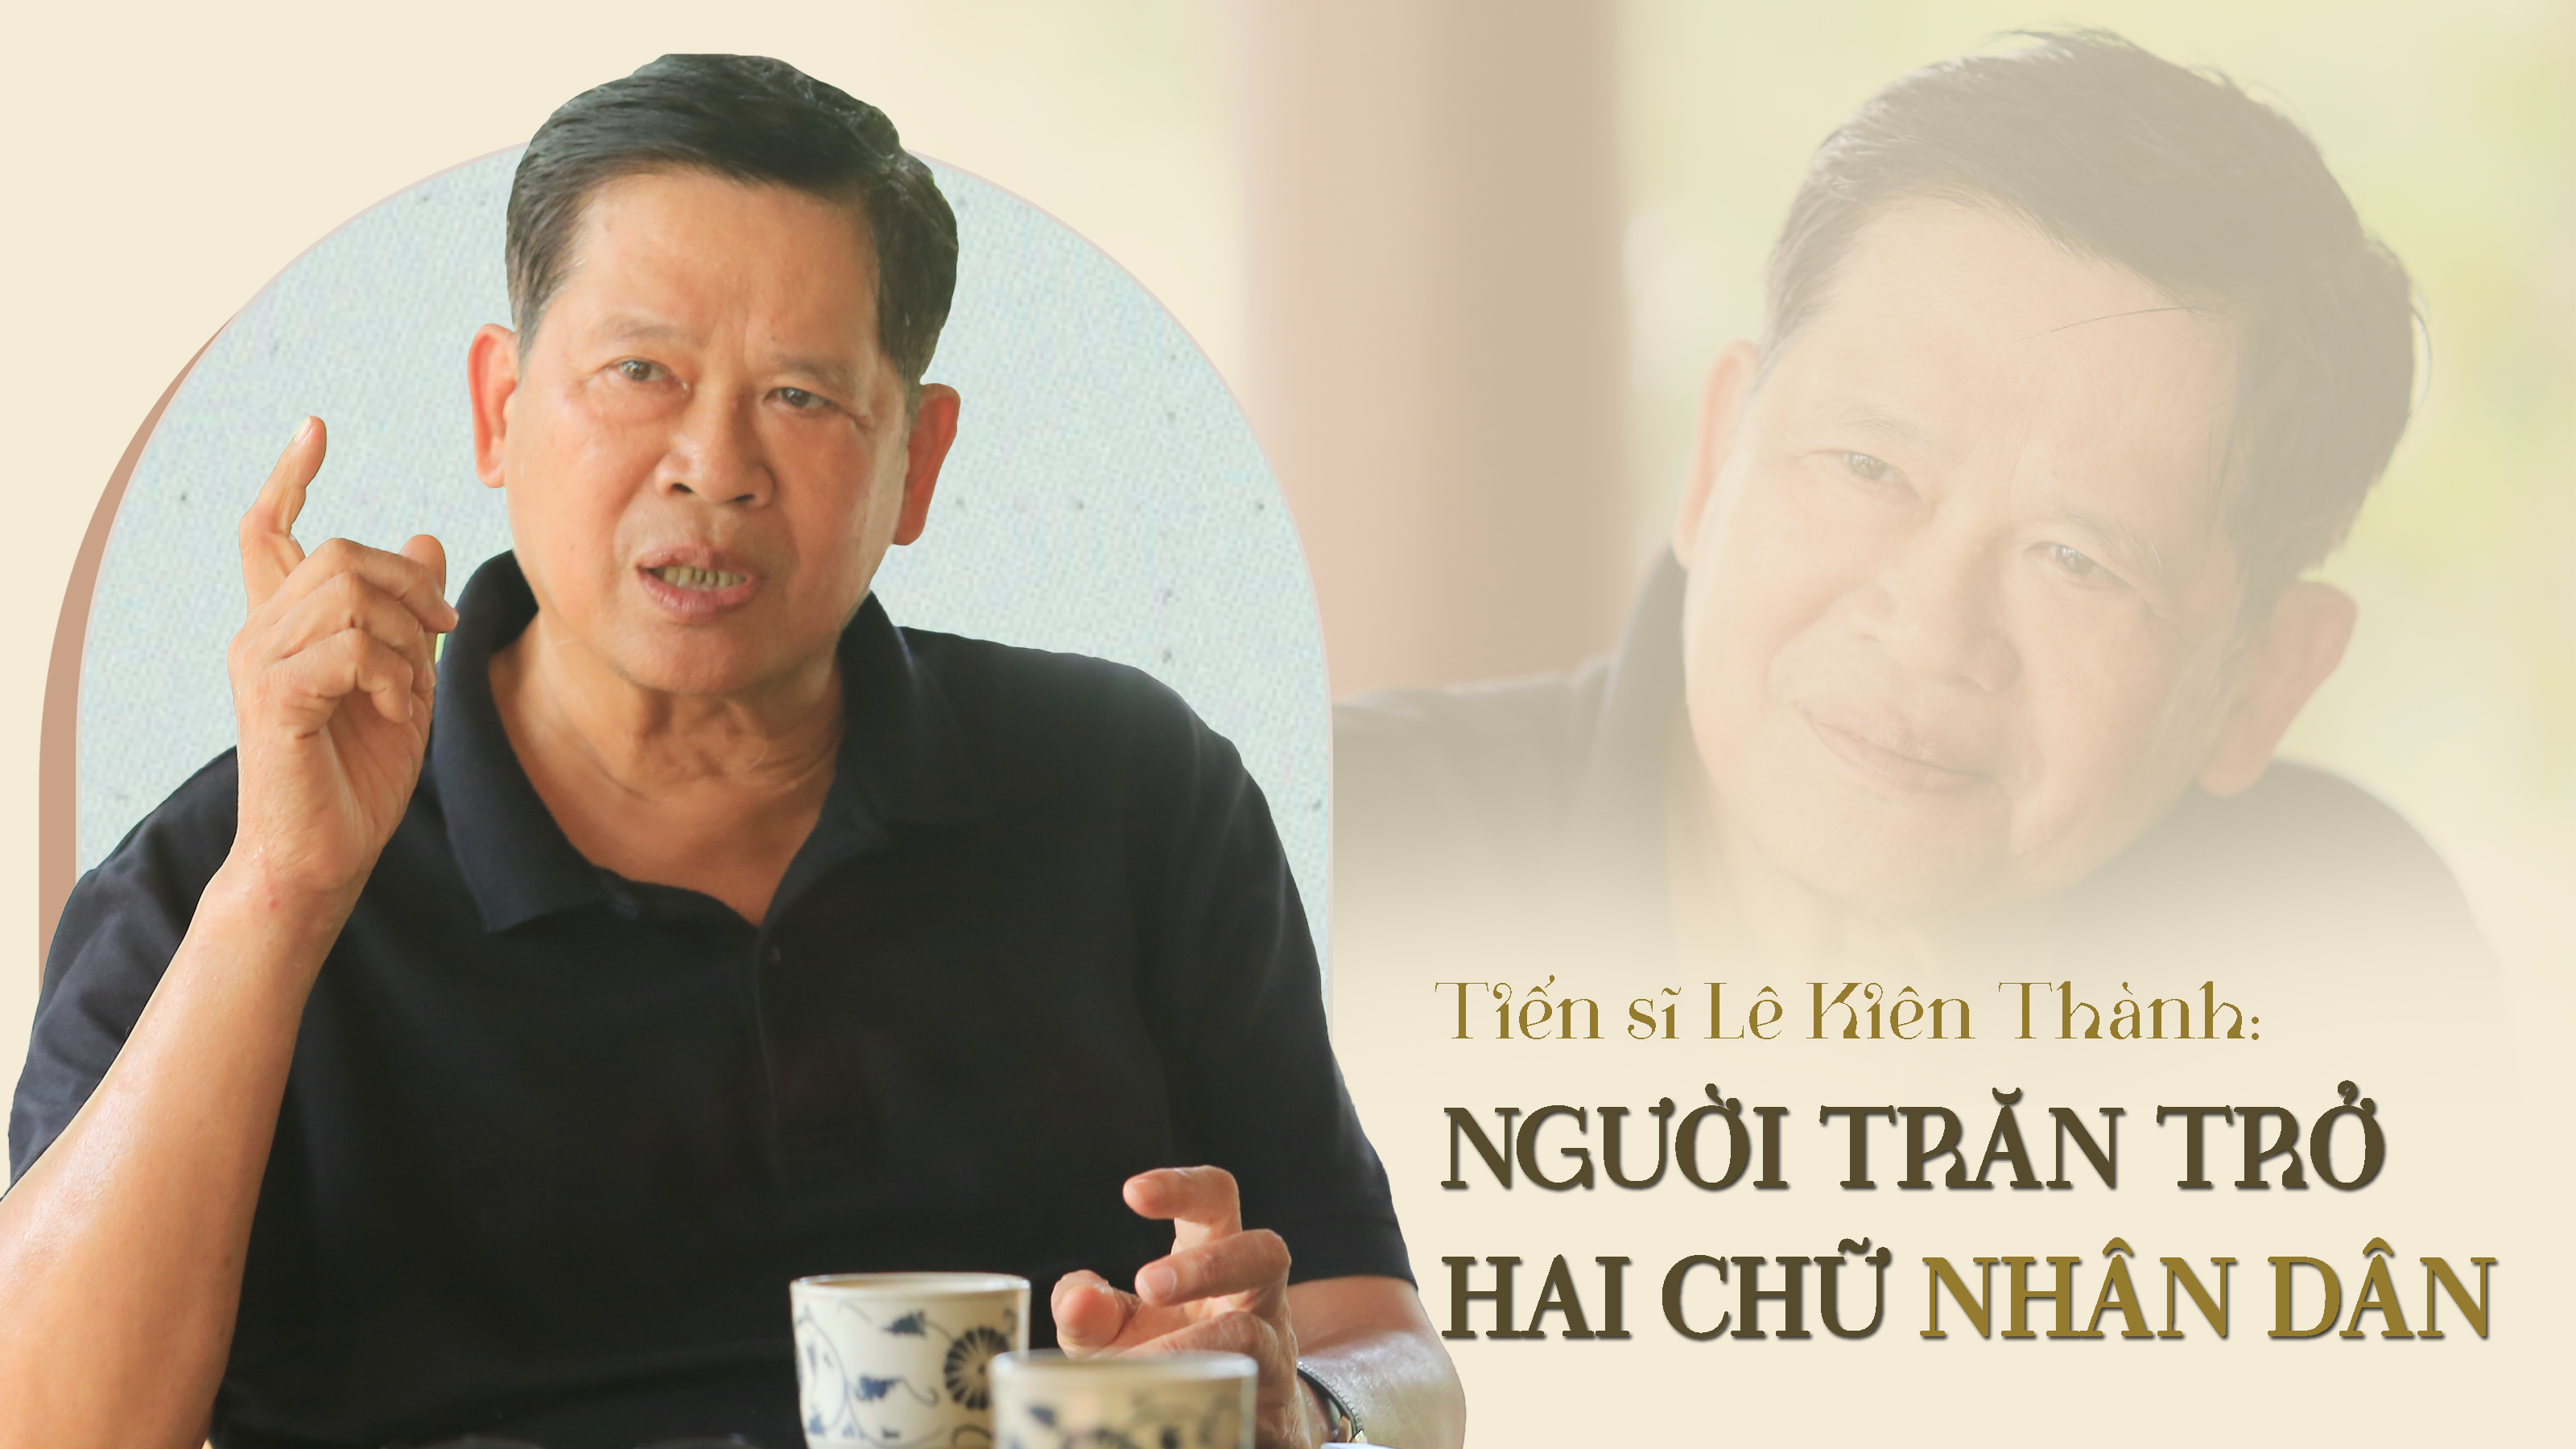 Tiến sĩ Lê Kiên Thành - người trăn trở hai chữ Nhân Dân